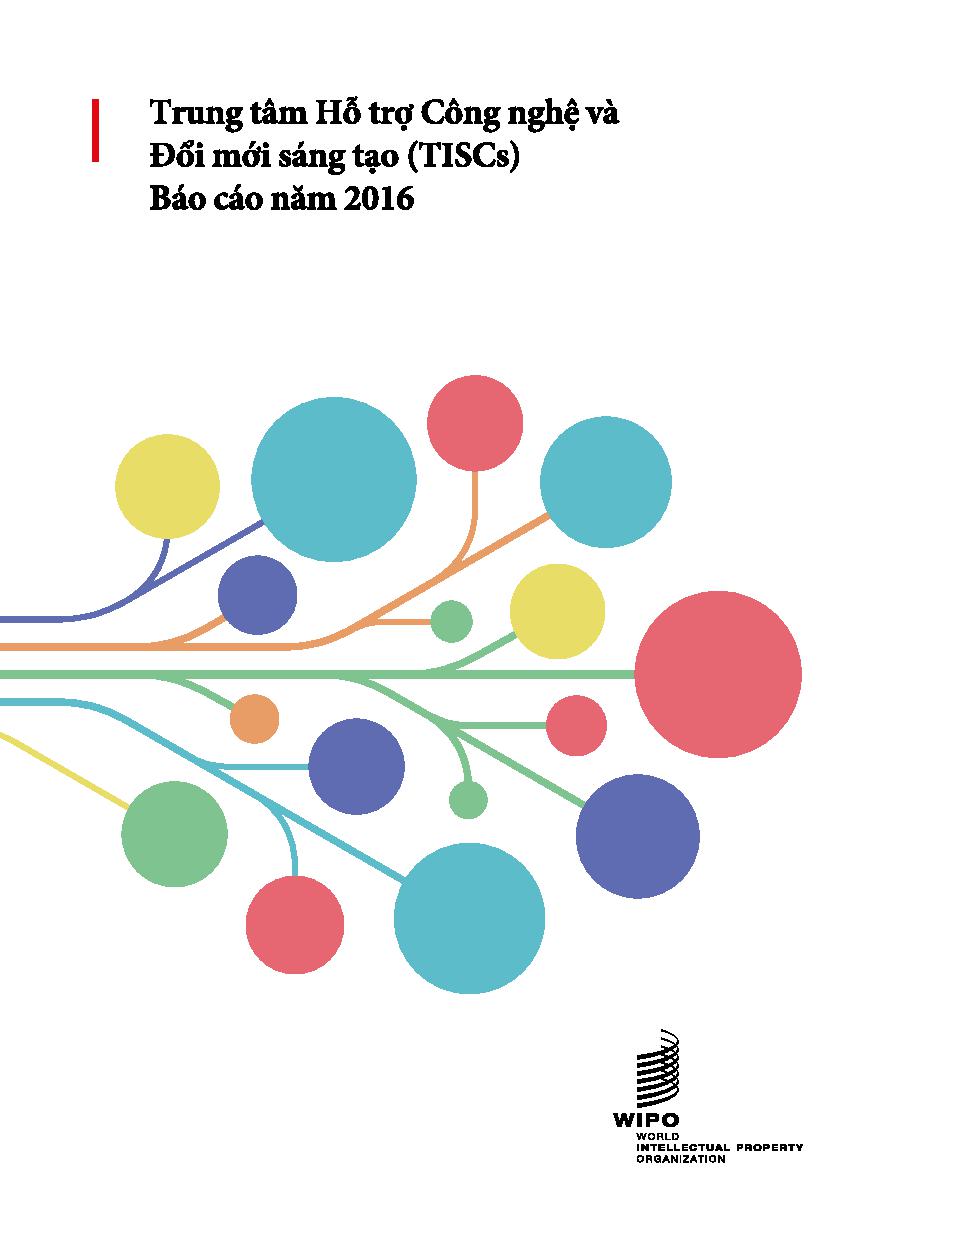 Trung tâm hỗ trợ Công nghệ và đổi mới sáng tạo (TISCs) - Báo cáo năm 2016